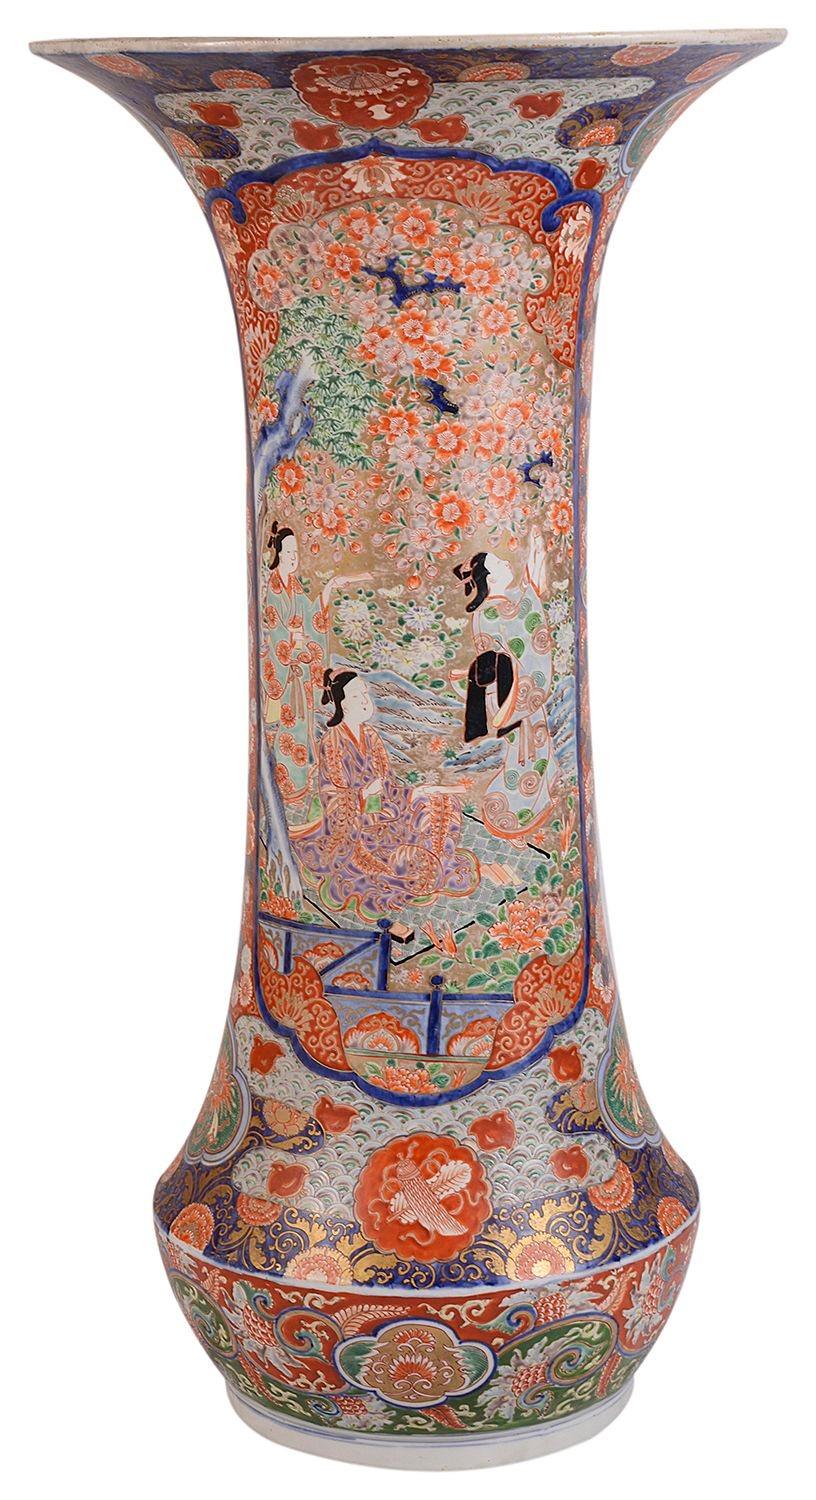 Très impressionnant vase à déversement Imari japonais de la fin du 19e siècle, aux couleurs vives sur les bordures à motifs, avec des panneaux peints encastrés représentant des oiseaux Geisha parmi des arbres en fleurs.
 
 
Lot 72 